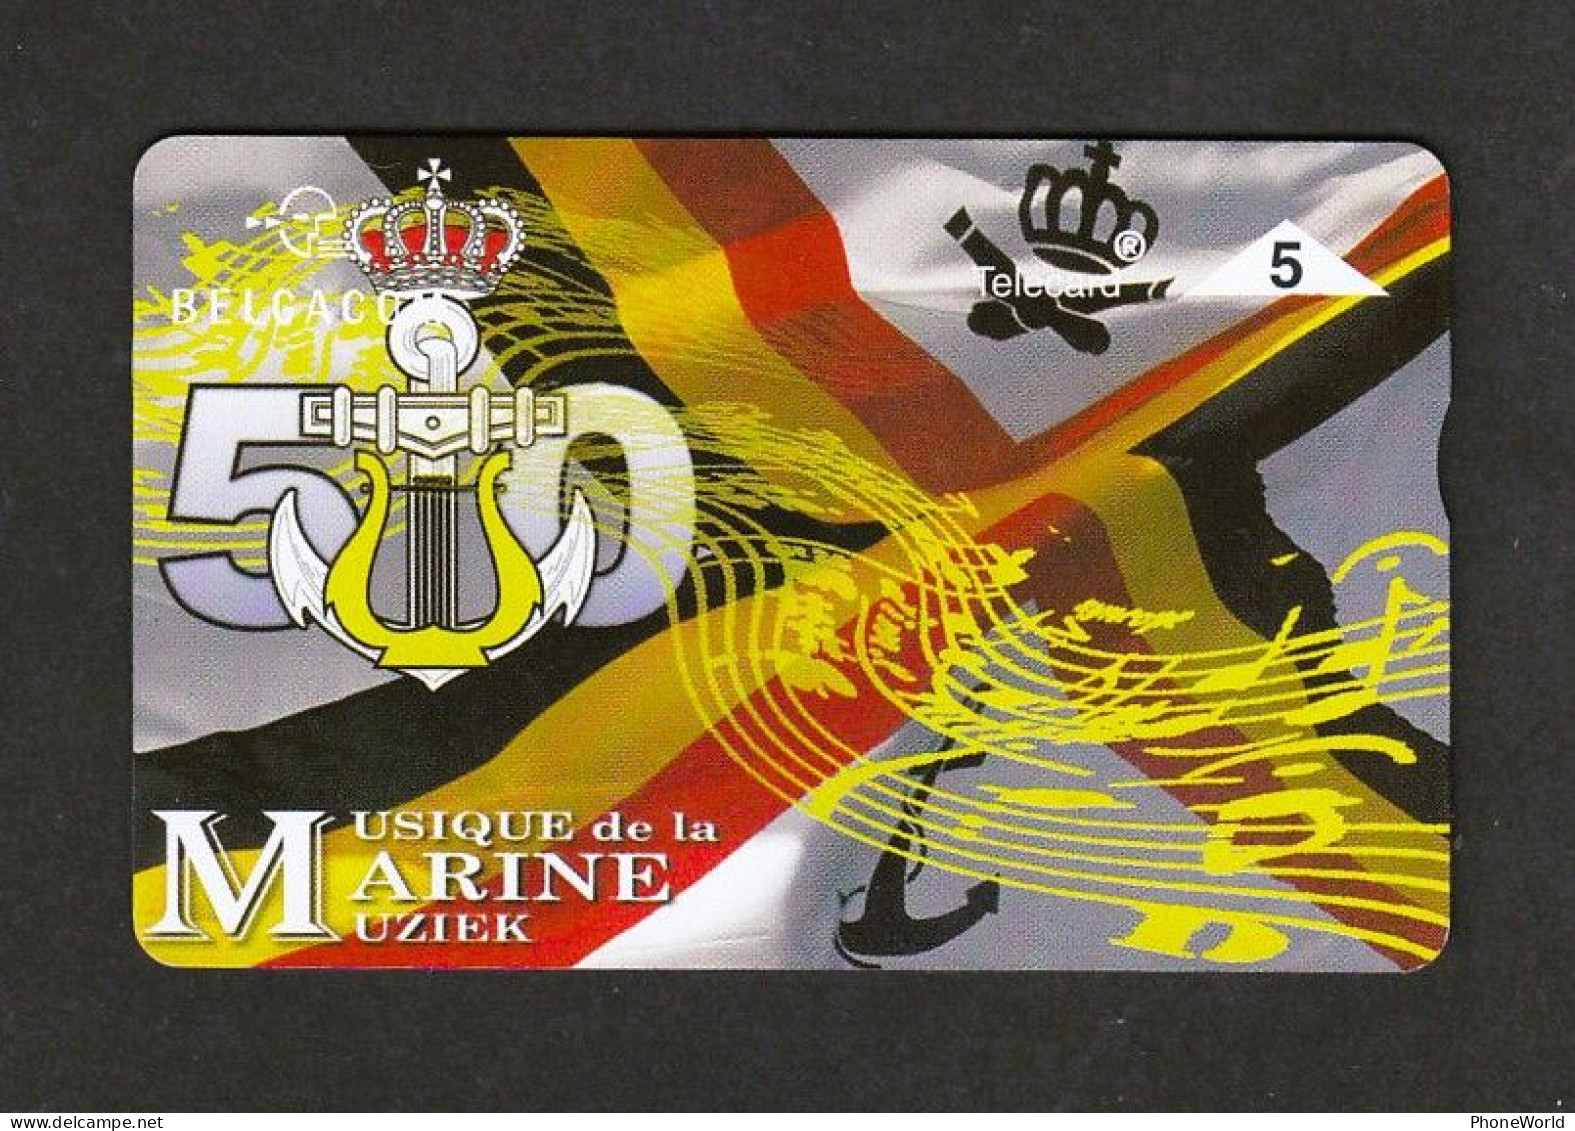 P533 - Musique De La Marine - 703 L Mint - Army - Senza Chip